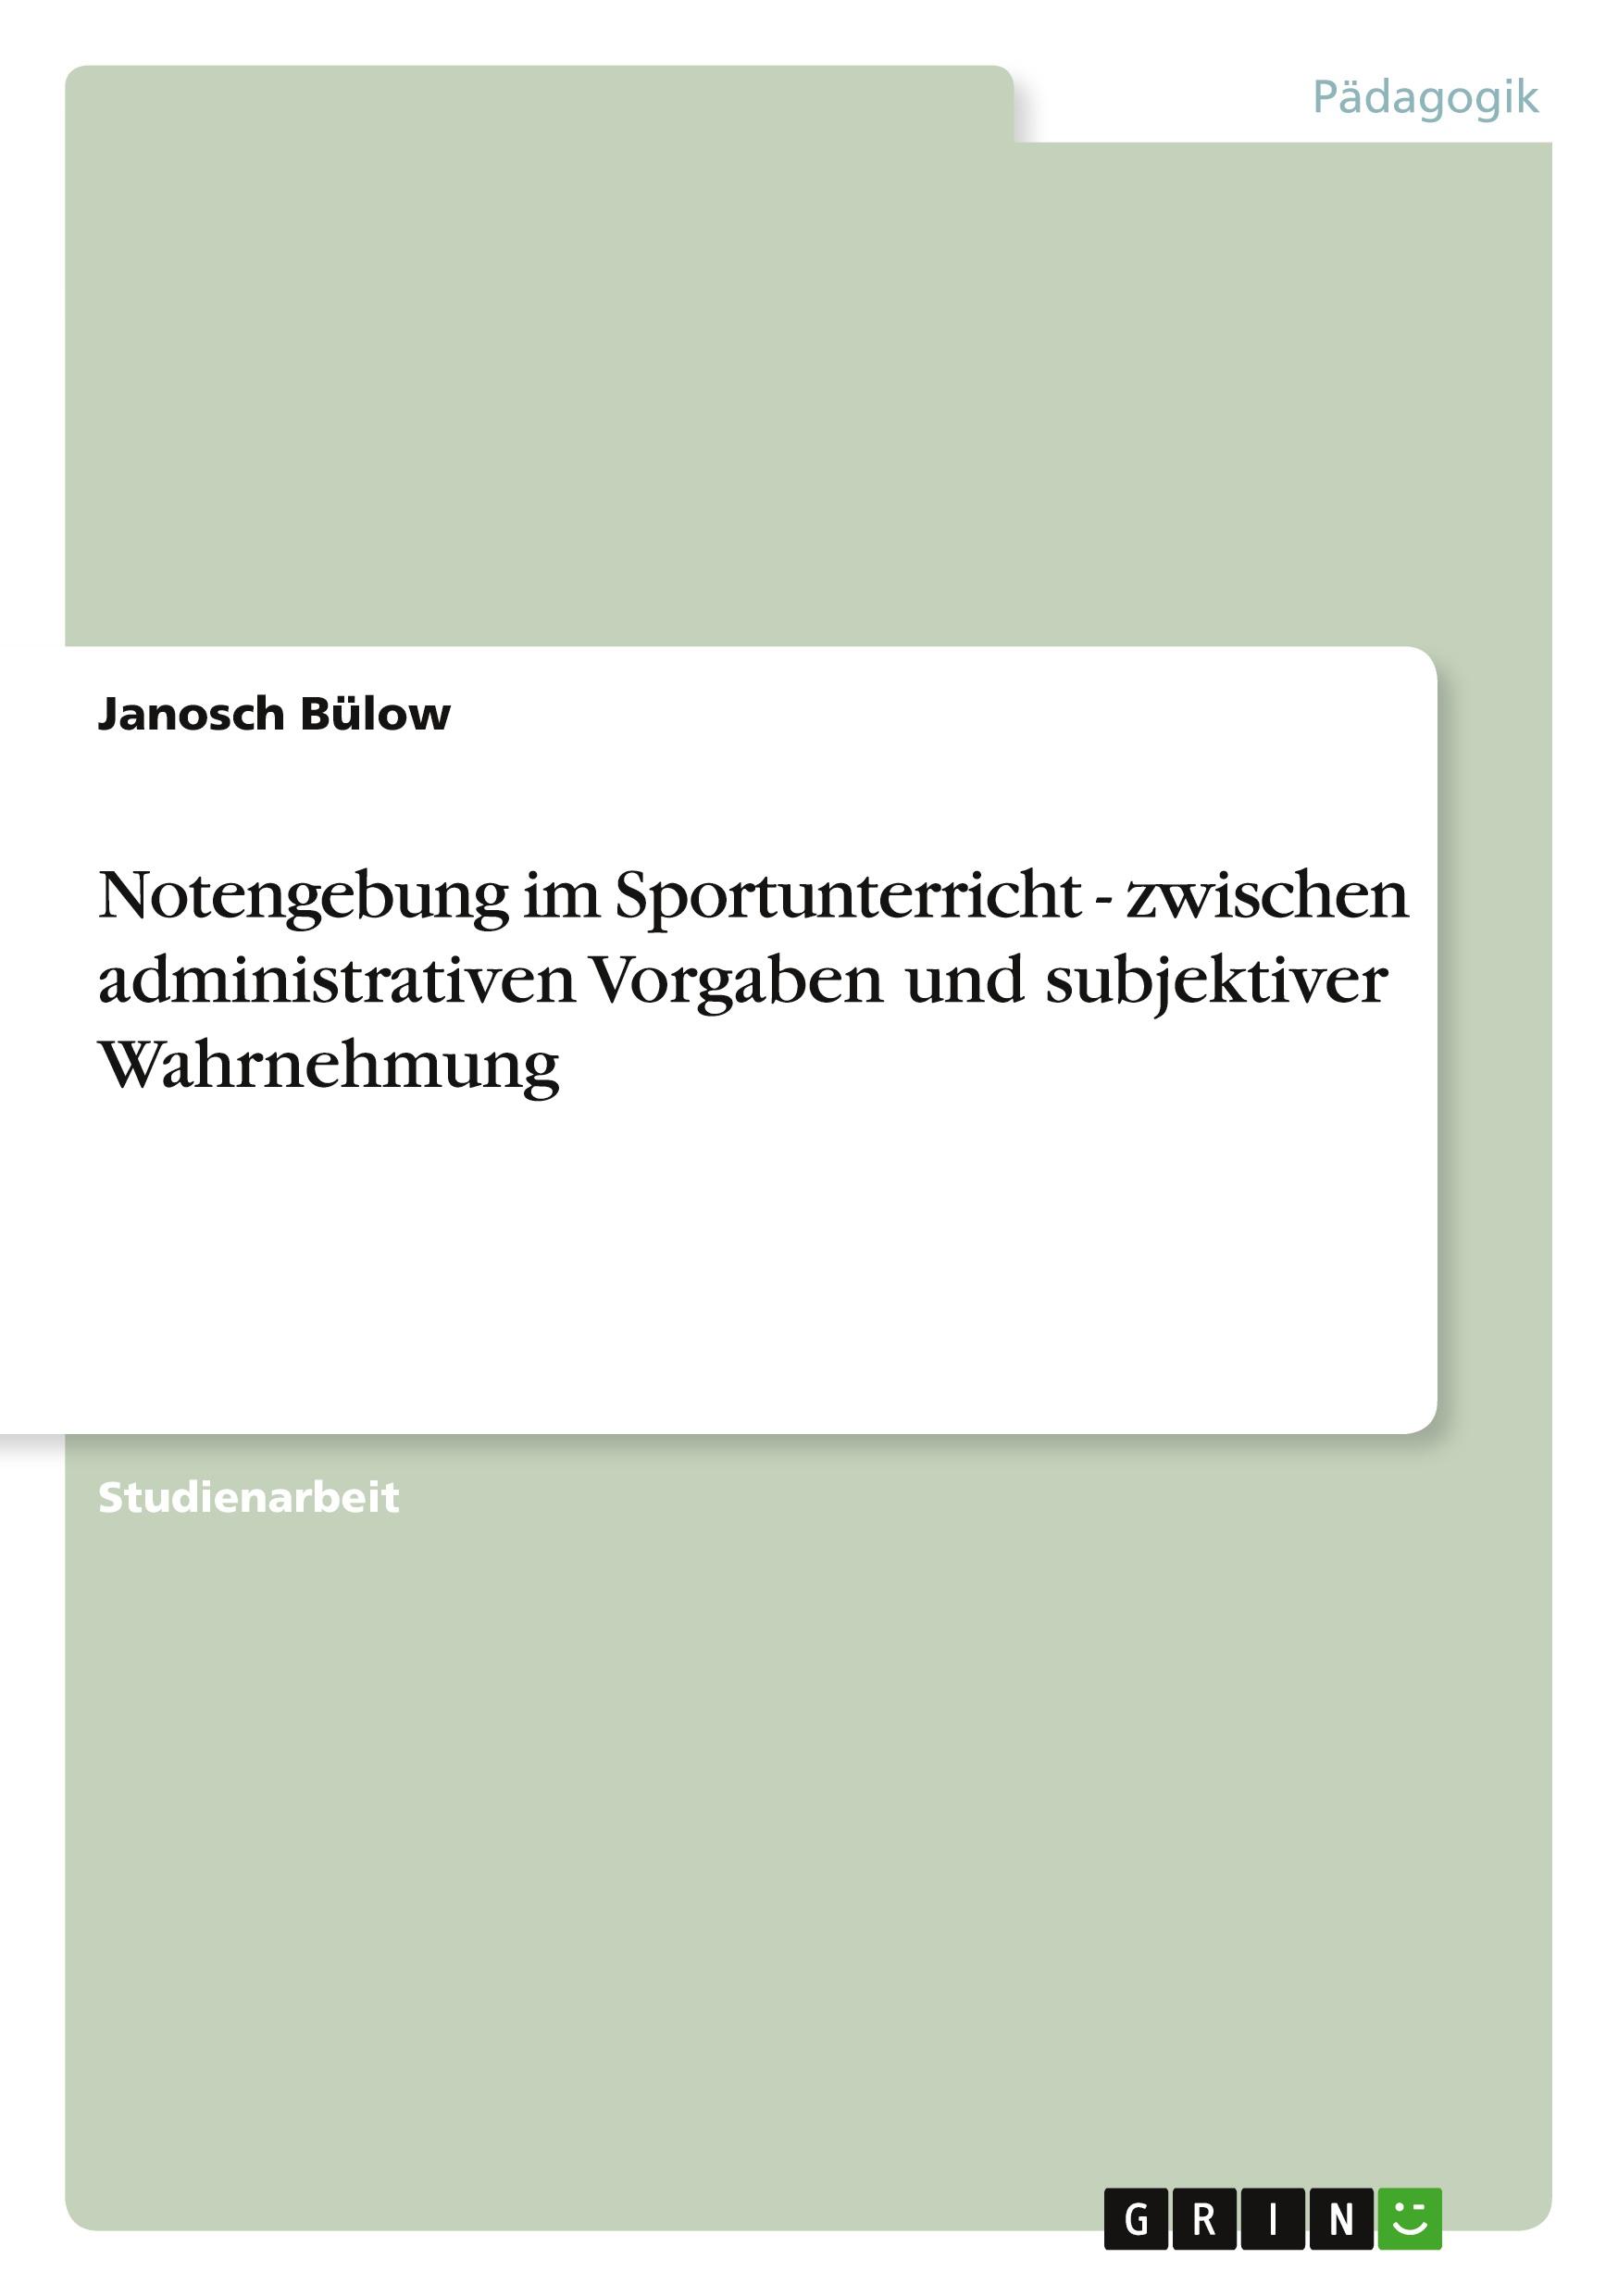 Notengebung im Sportunterricht - zwischen administrativen Vorgaben und subjektiver Wahrnehmung / Janosch Bülow / Taschenbuch / Paperback / 32 S. / Deutsch / 2012 / GRIN Verlag / EAN 9783656122746 - Bülow, Janosch